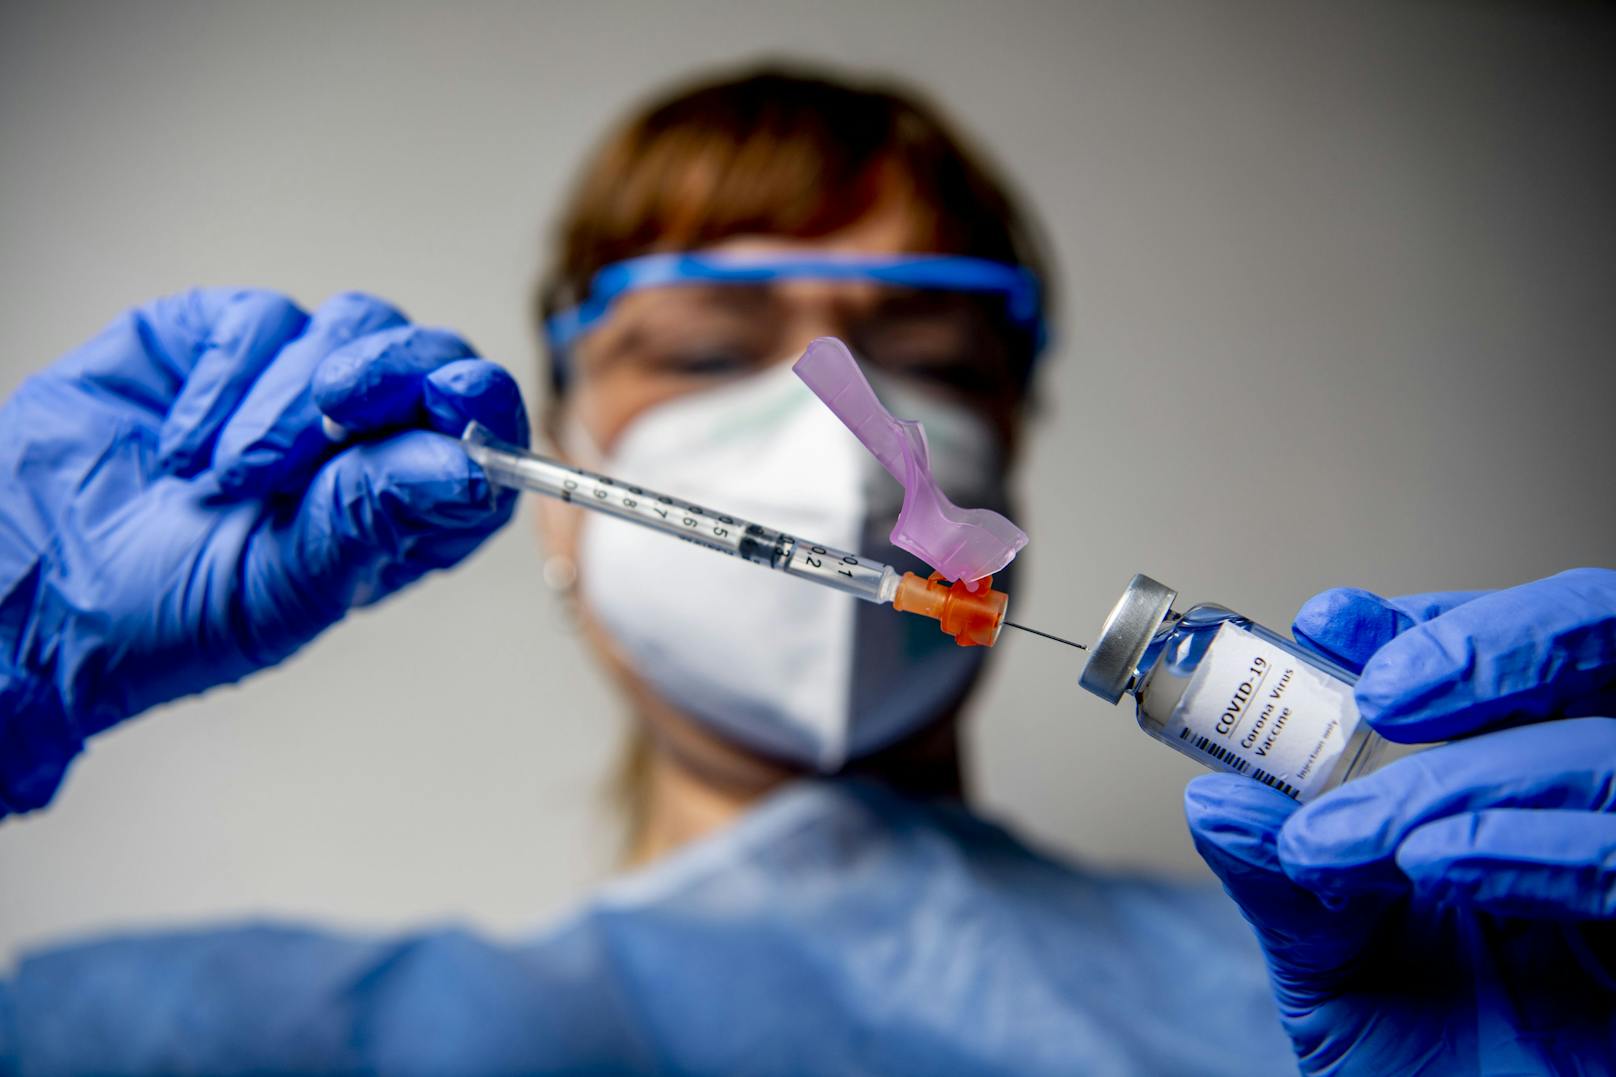 Südafrika hat die geplanten AstraZeneca-Impfungen vorübergehend gestoppt.